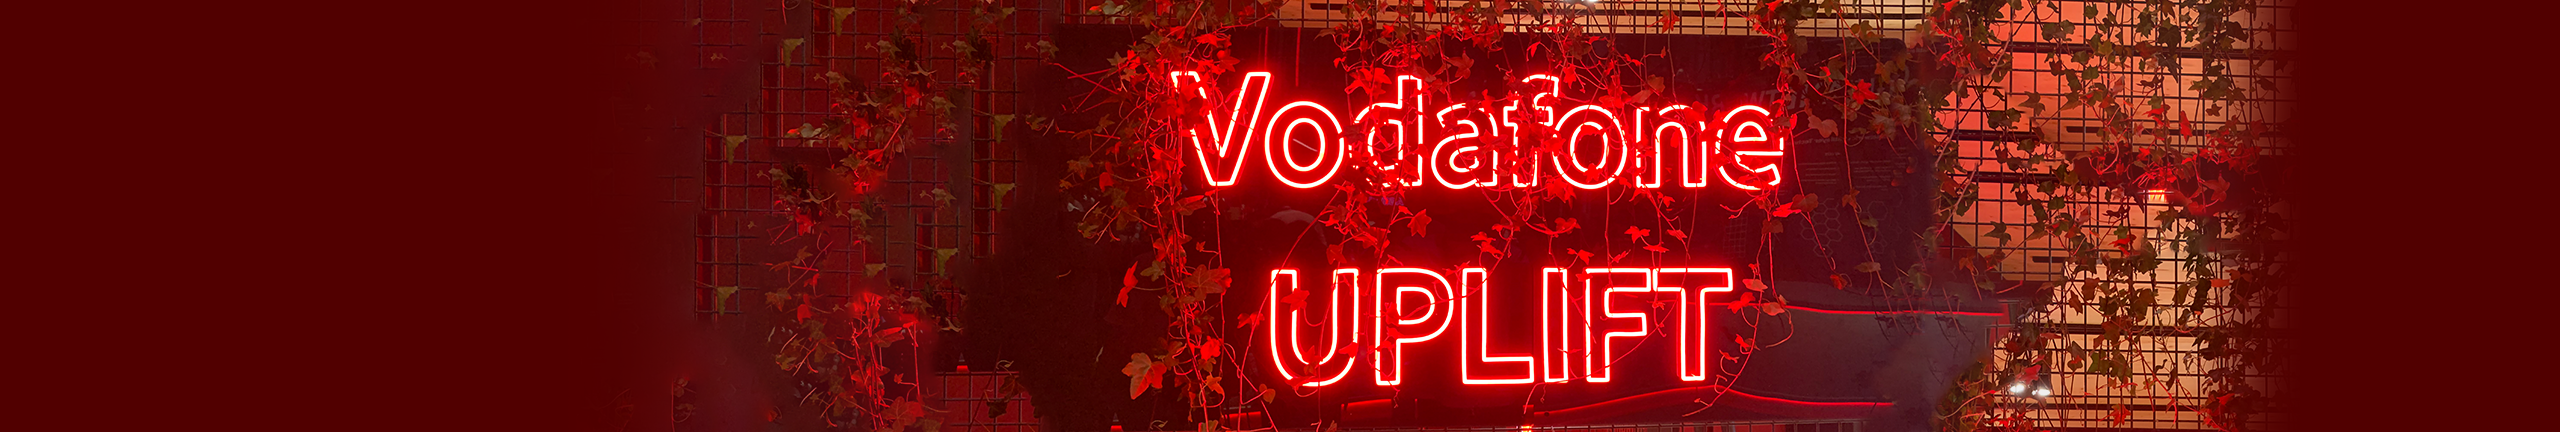 Vodafone UPLIFT: Die Initiative für neue Innovationspartnerschaften bei Vodafone Deutschland.